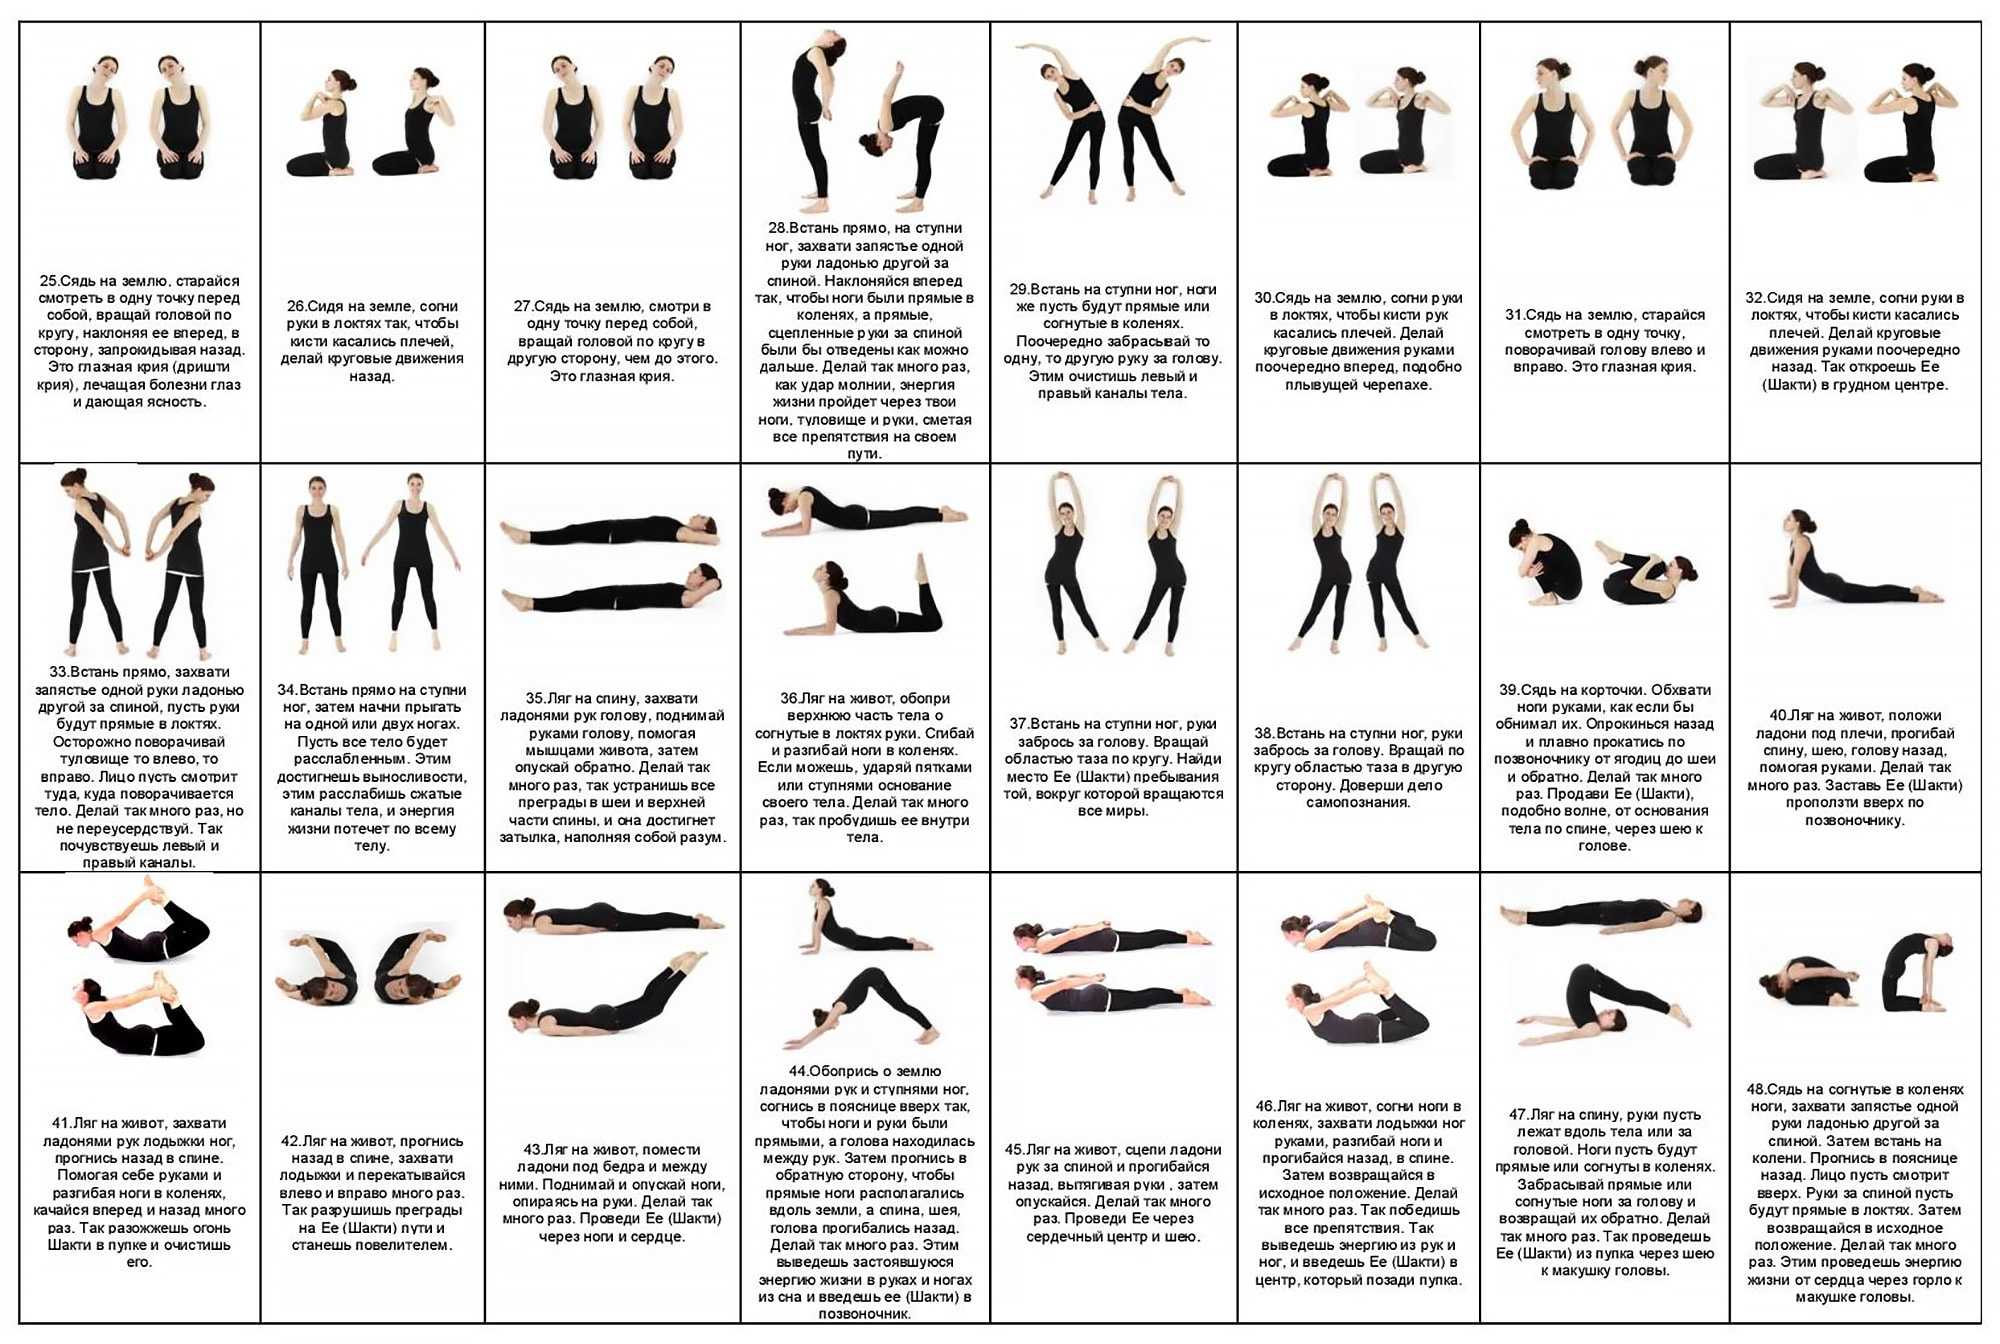 Гид по видам йоги на портал в деталях опишет все виды практик йоги для начинающих, различные виды поз и дыхания, а также поможет выбрать коврик для занятия этим видом спорта